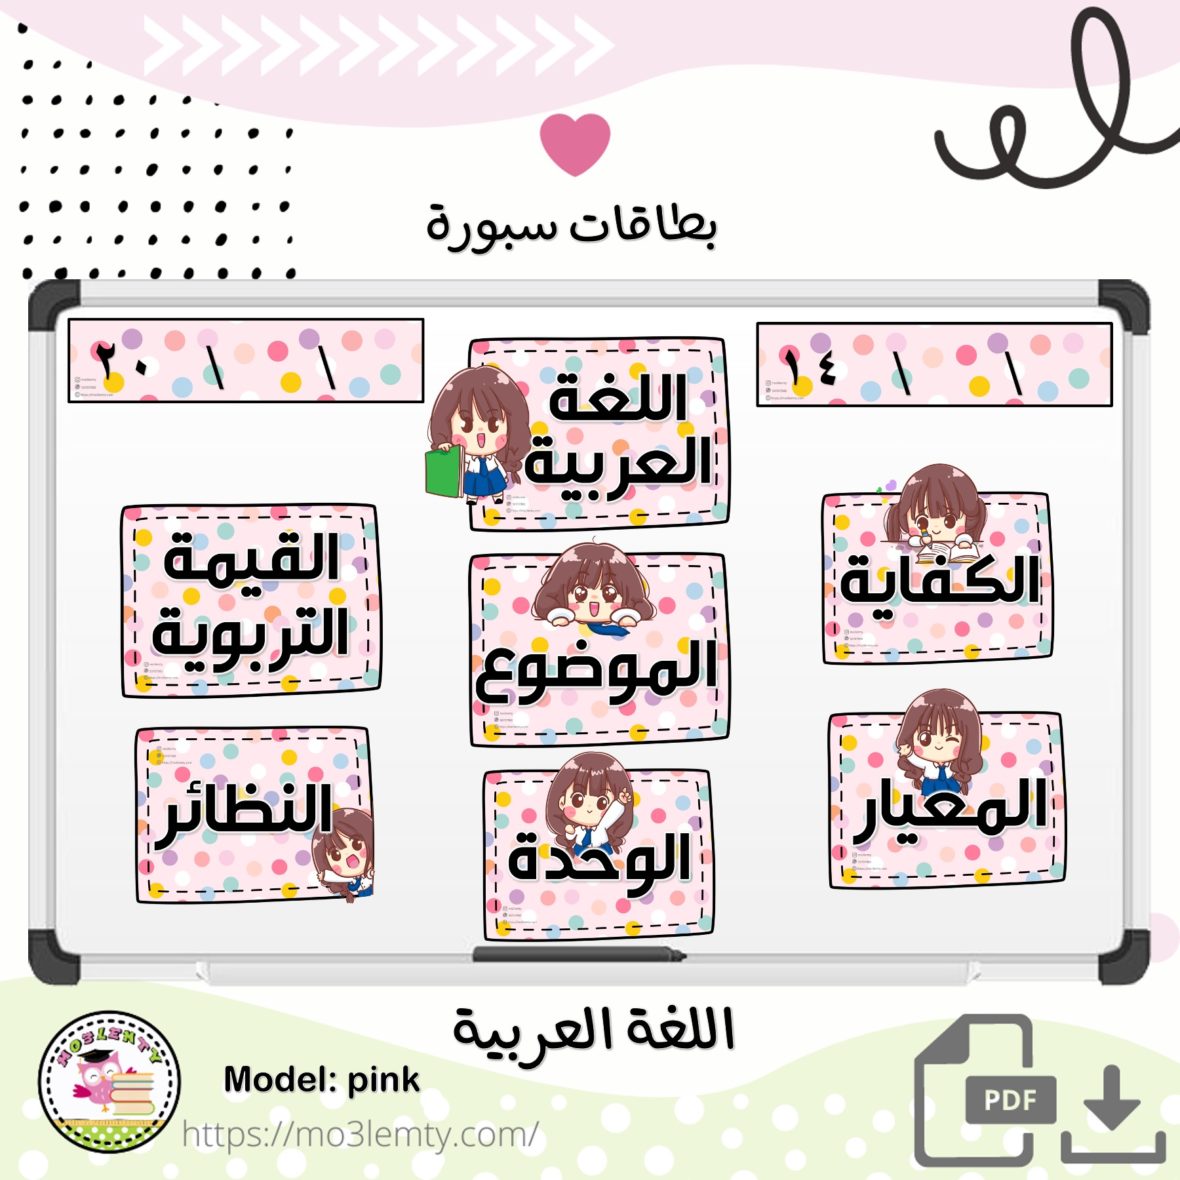 بطاقات سبورة اللغة العربية -بنات